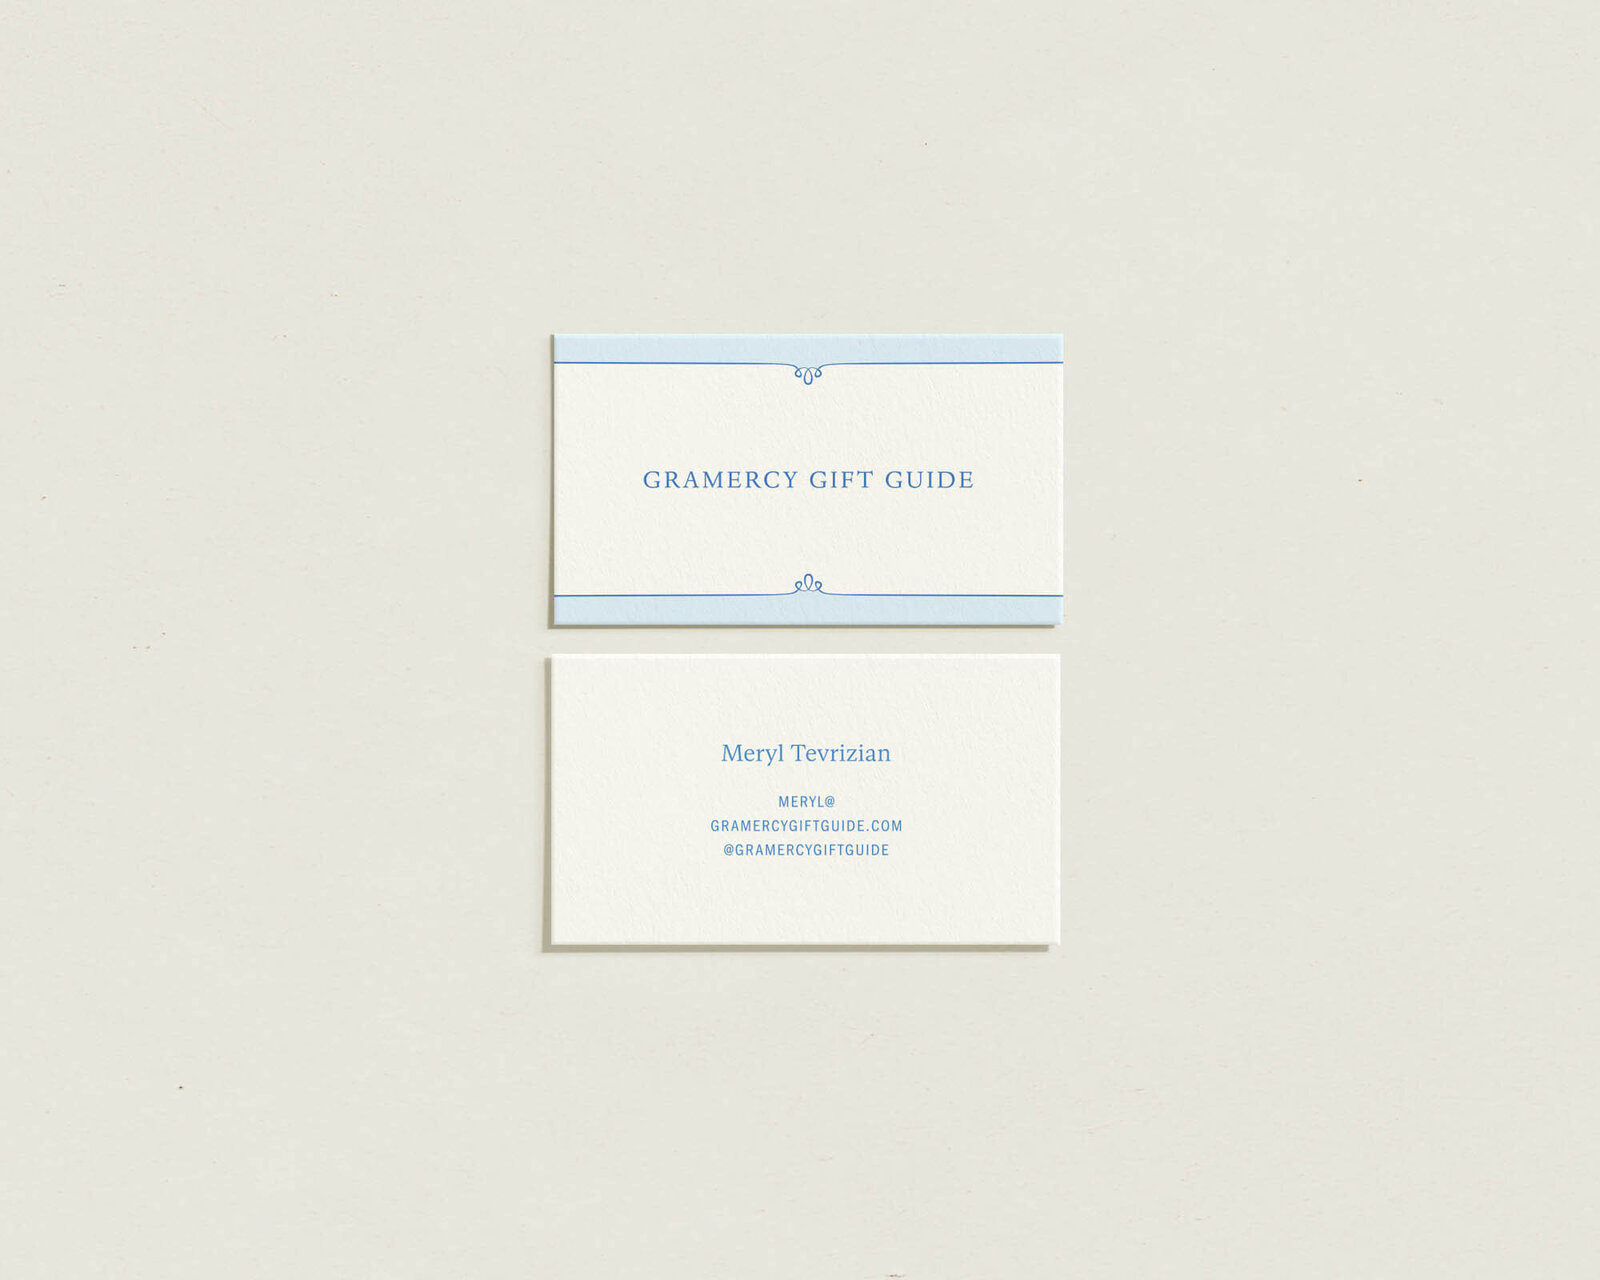 Gramercy-Gift-Guide-New-York-Branding-Design-Business-Card